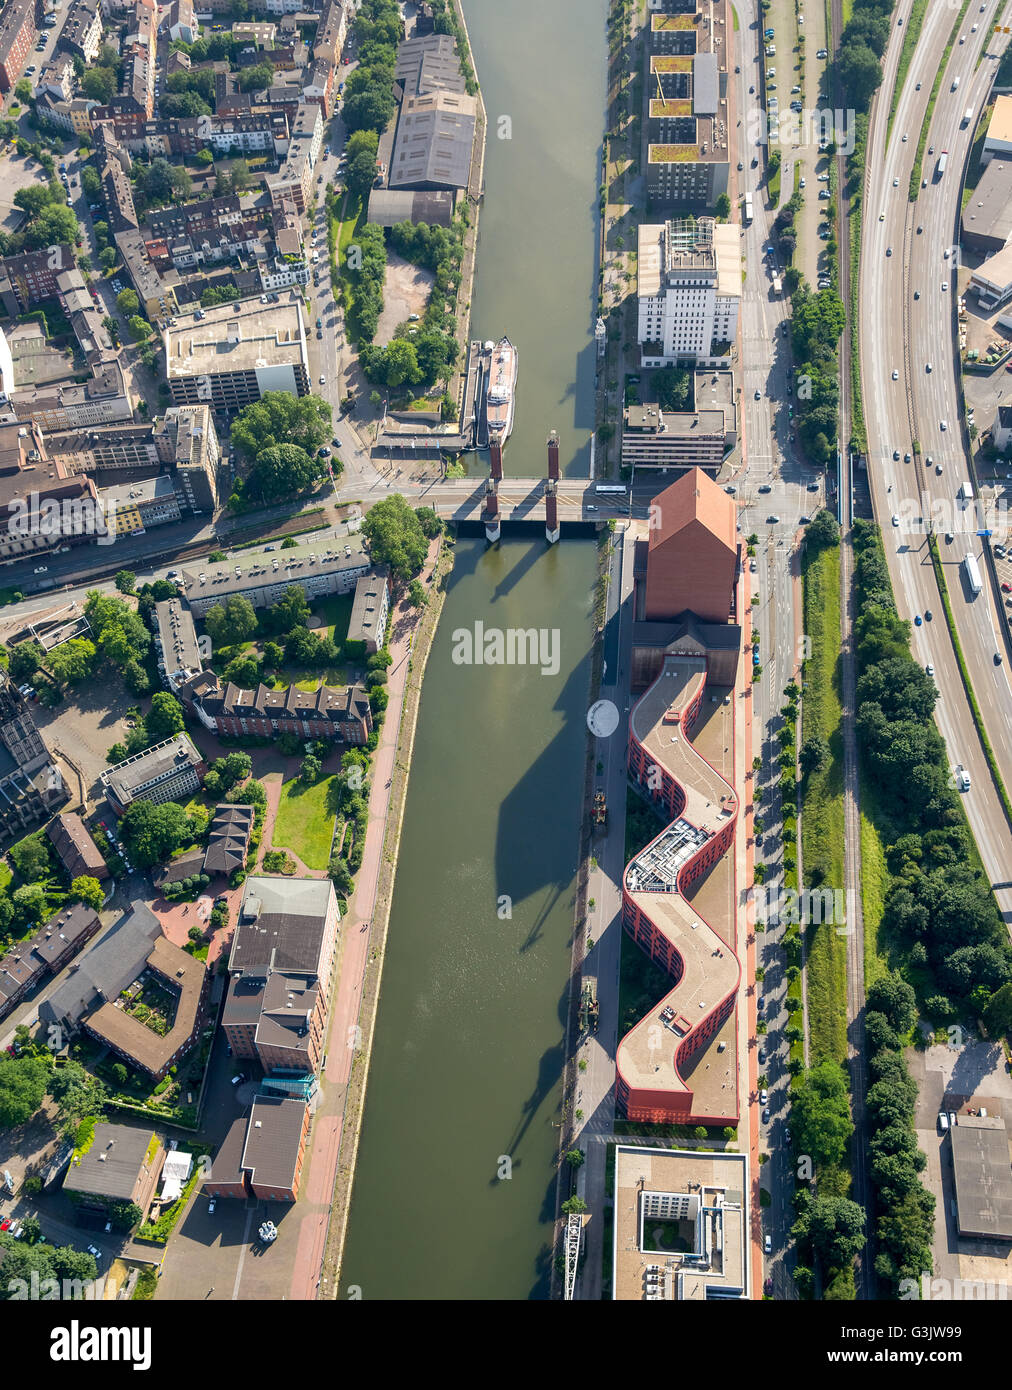 Aerial view, NRW State Archive Department Rheinland, Schwanentor and inner harbor channel, Duisburg, Ruhr region, Stock Photo